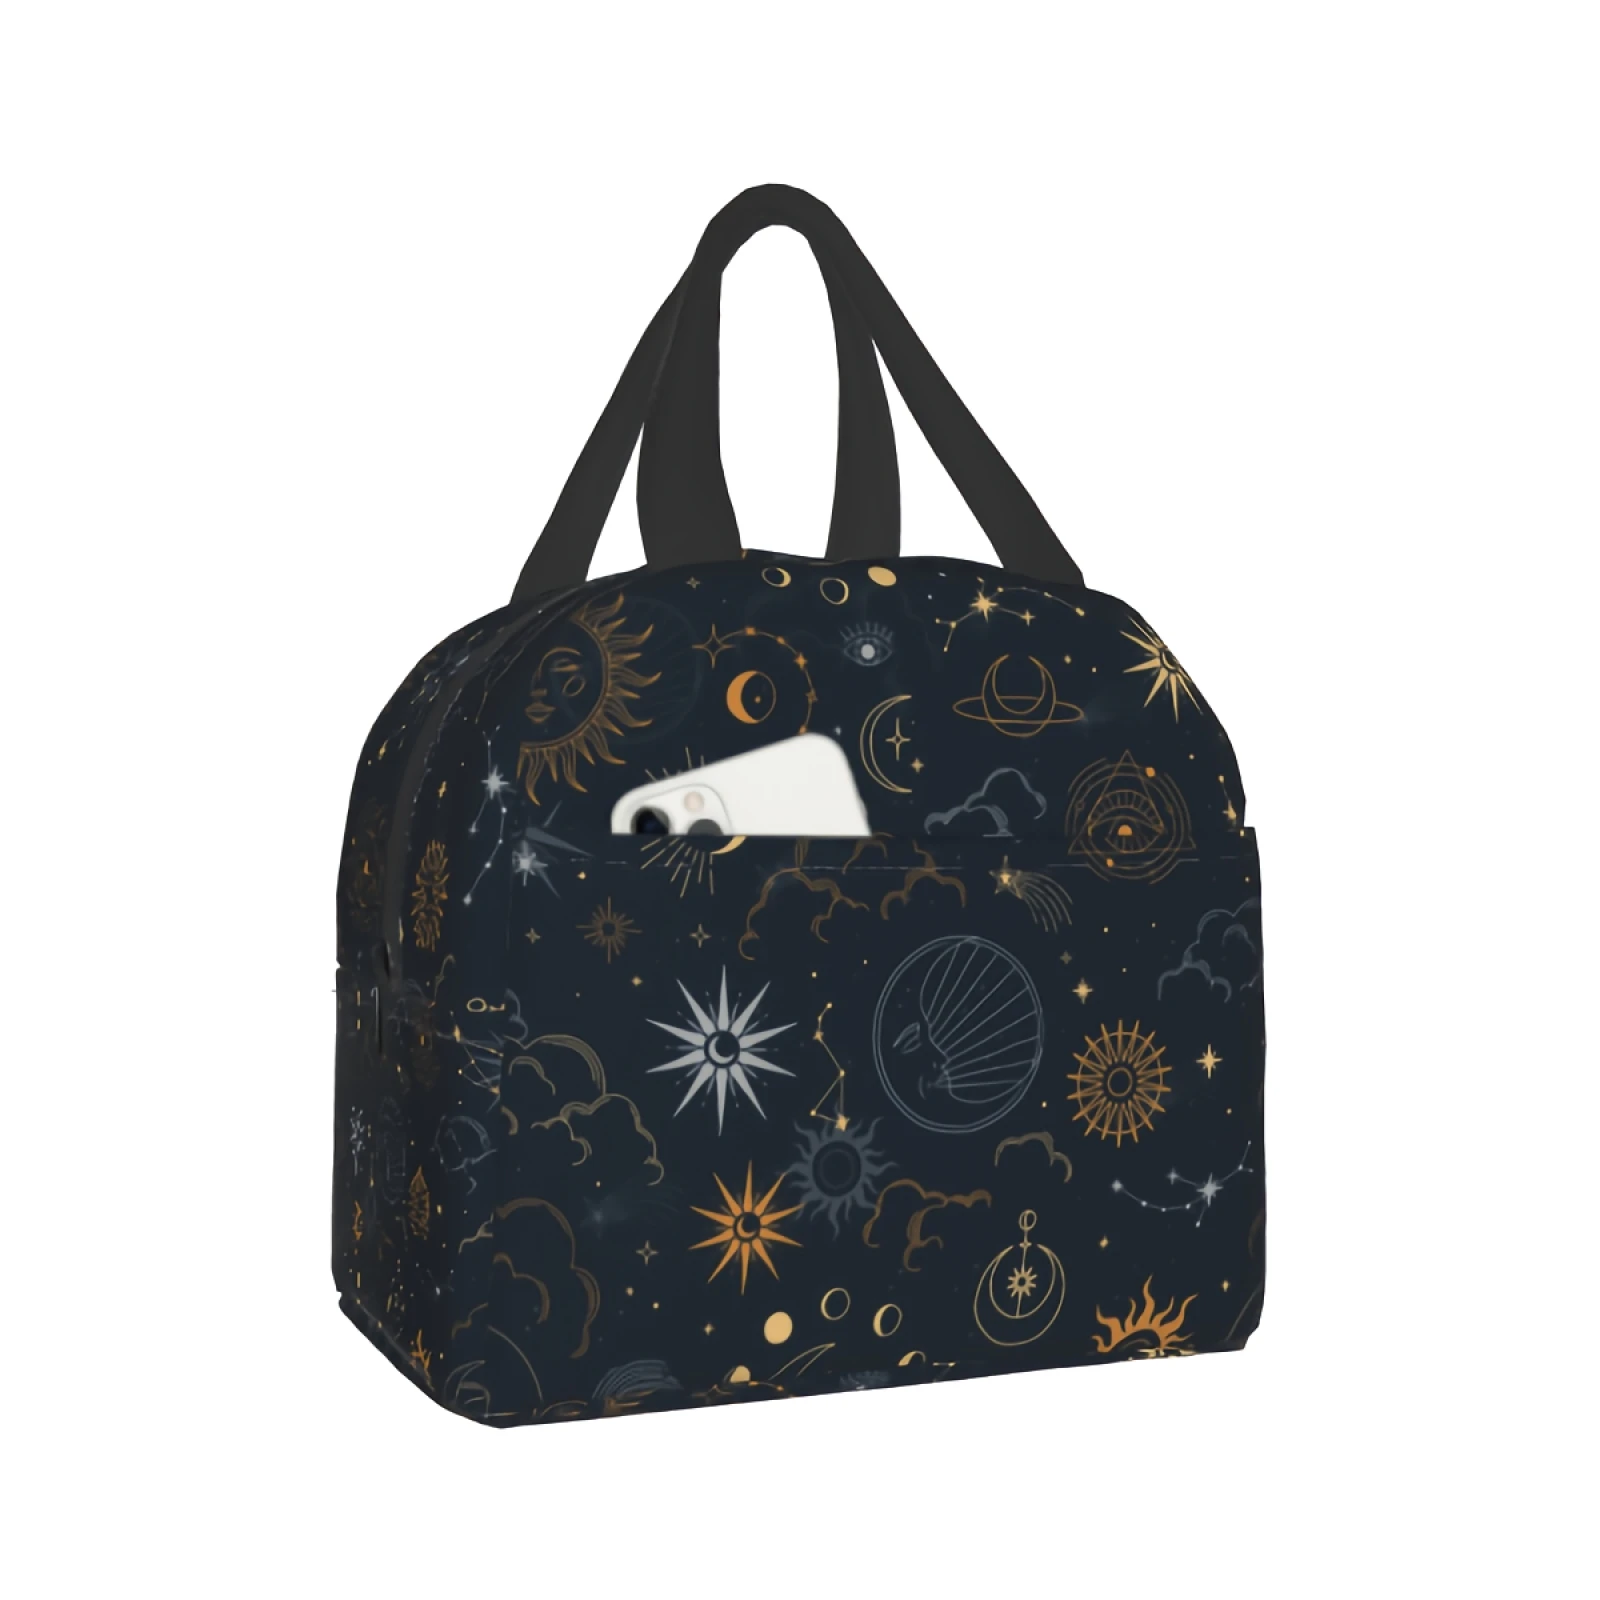 

Zodiac Lunch Bag Mysterious Cooler Bag Astrology Insulated Bag for Women Men Teen Girls Boys Office Work School Picnic Beach